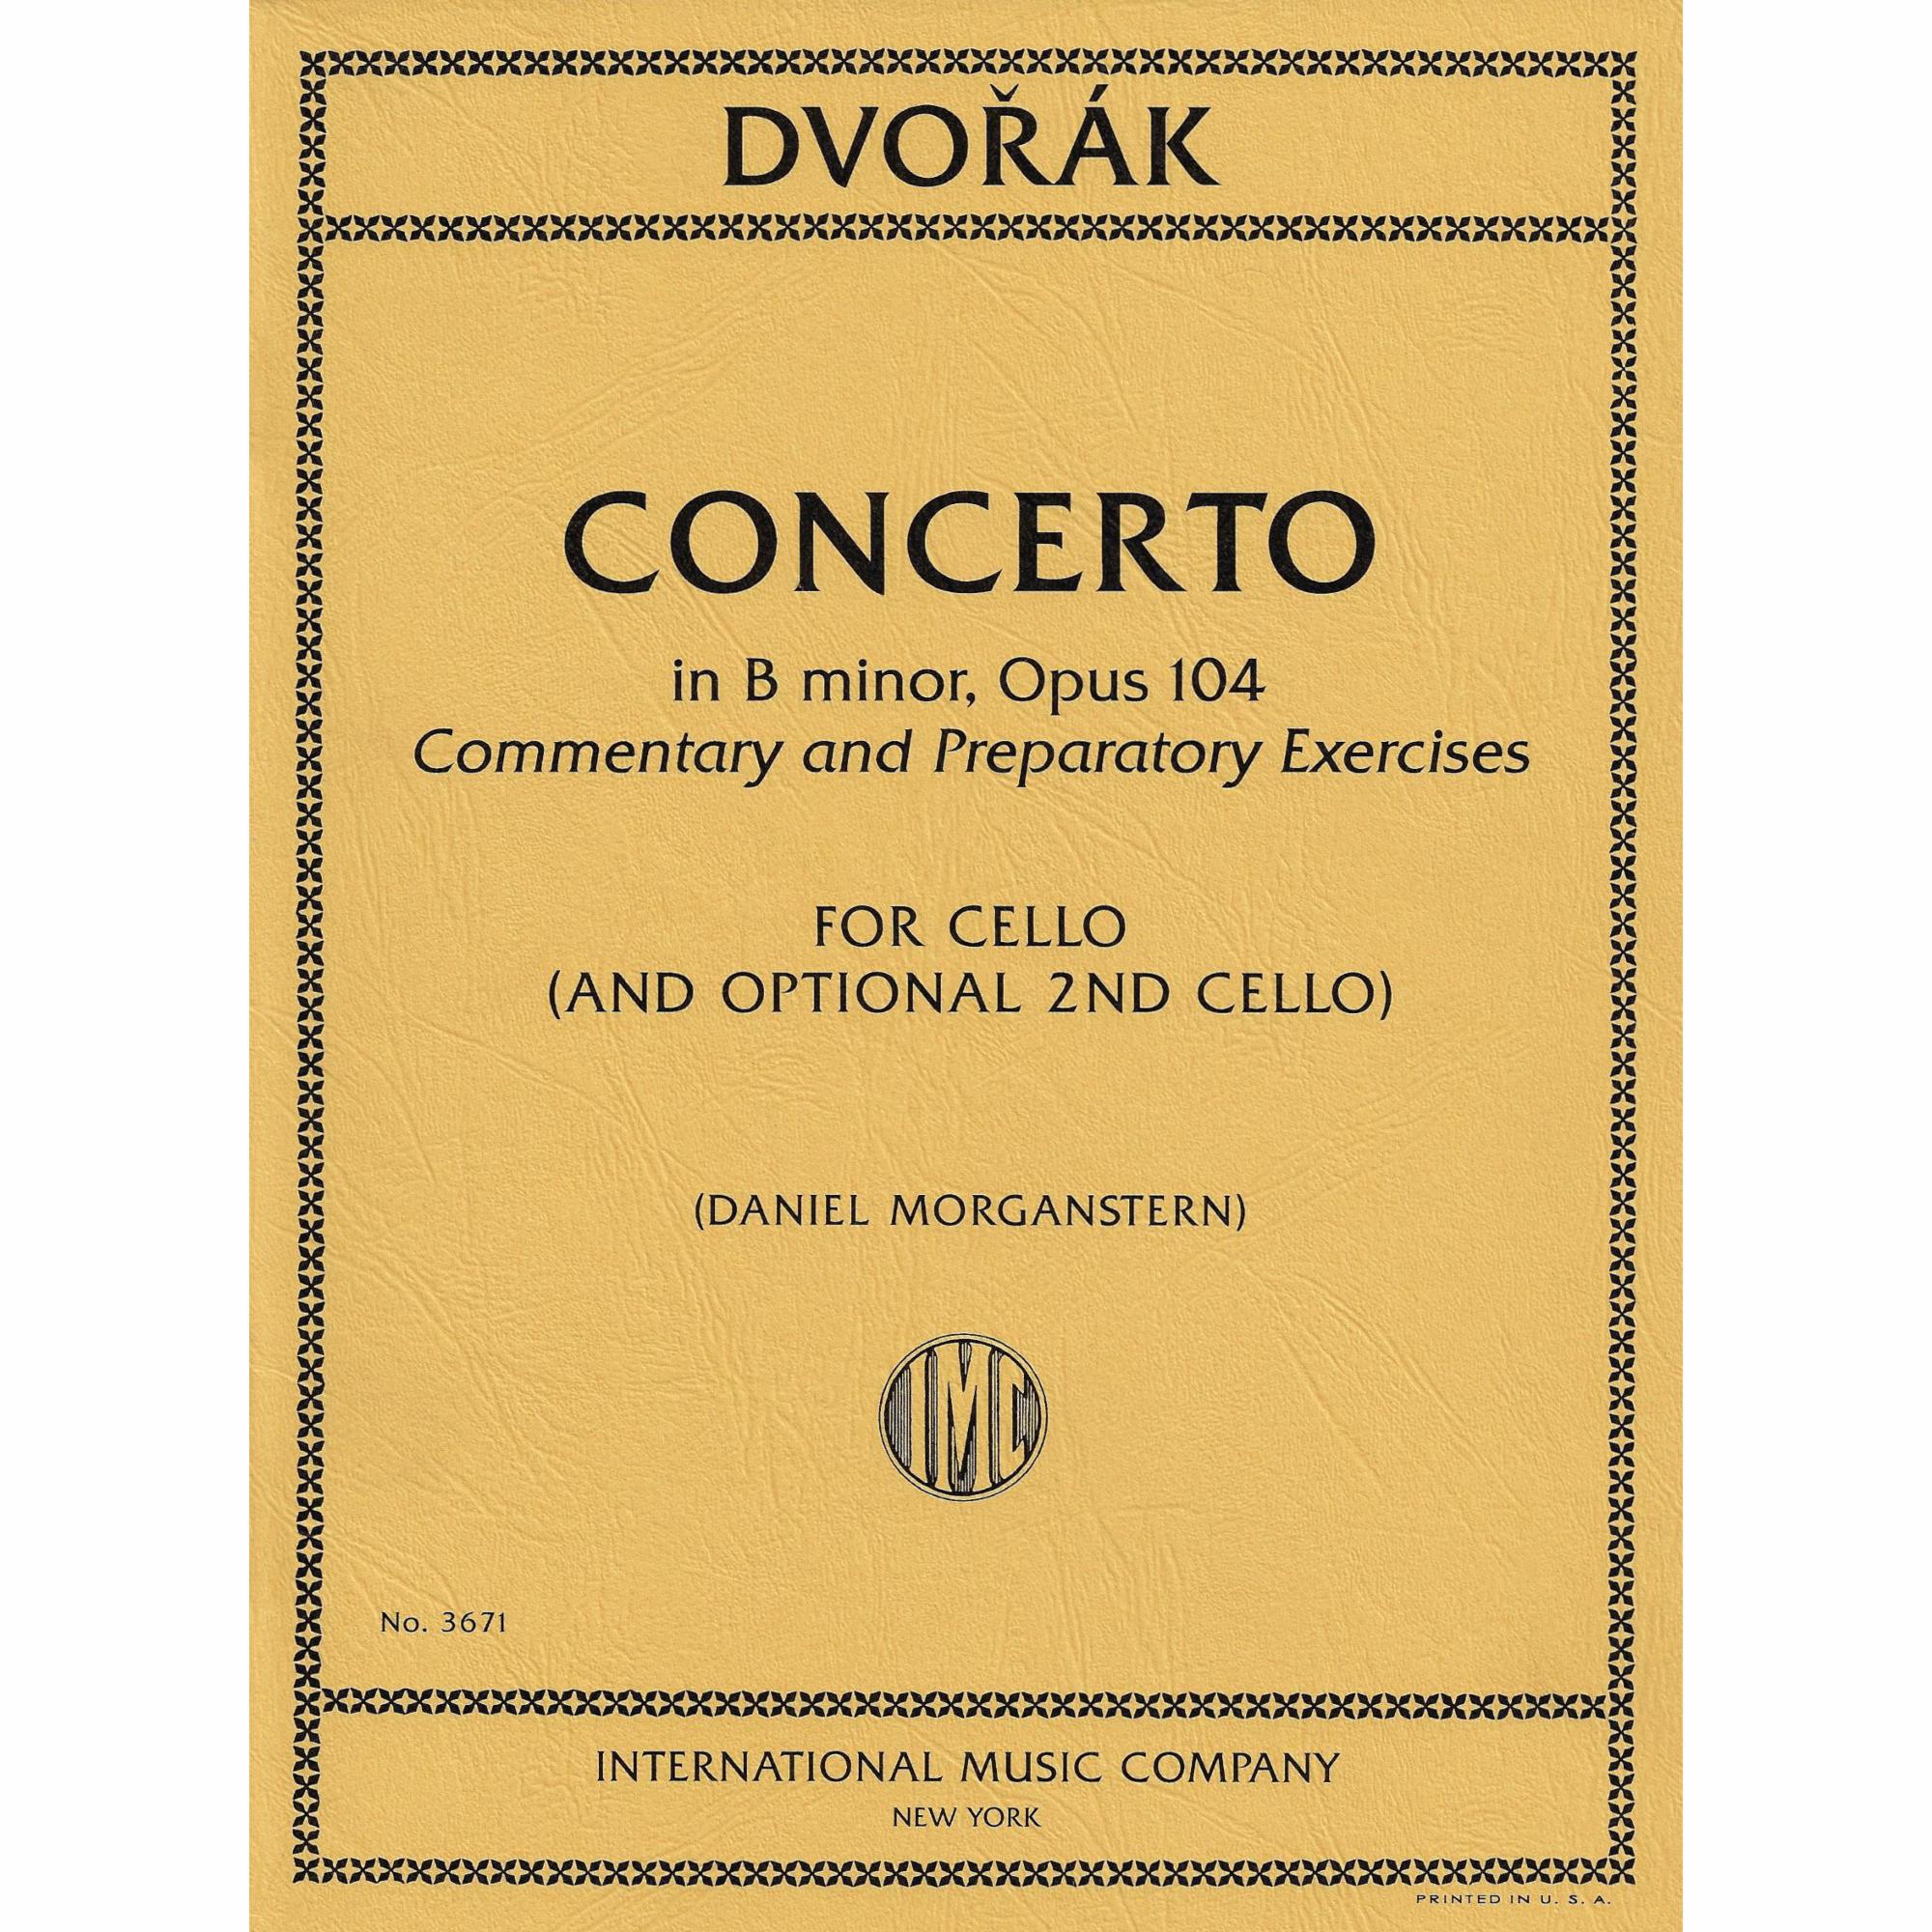 Dvorak -- Cello Concerto in B Minor, Op. 104 for Two Cellos